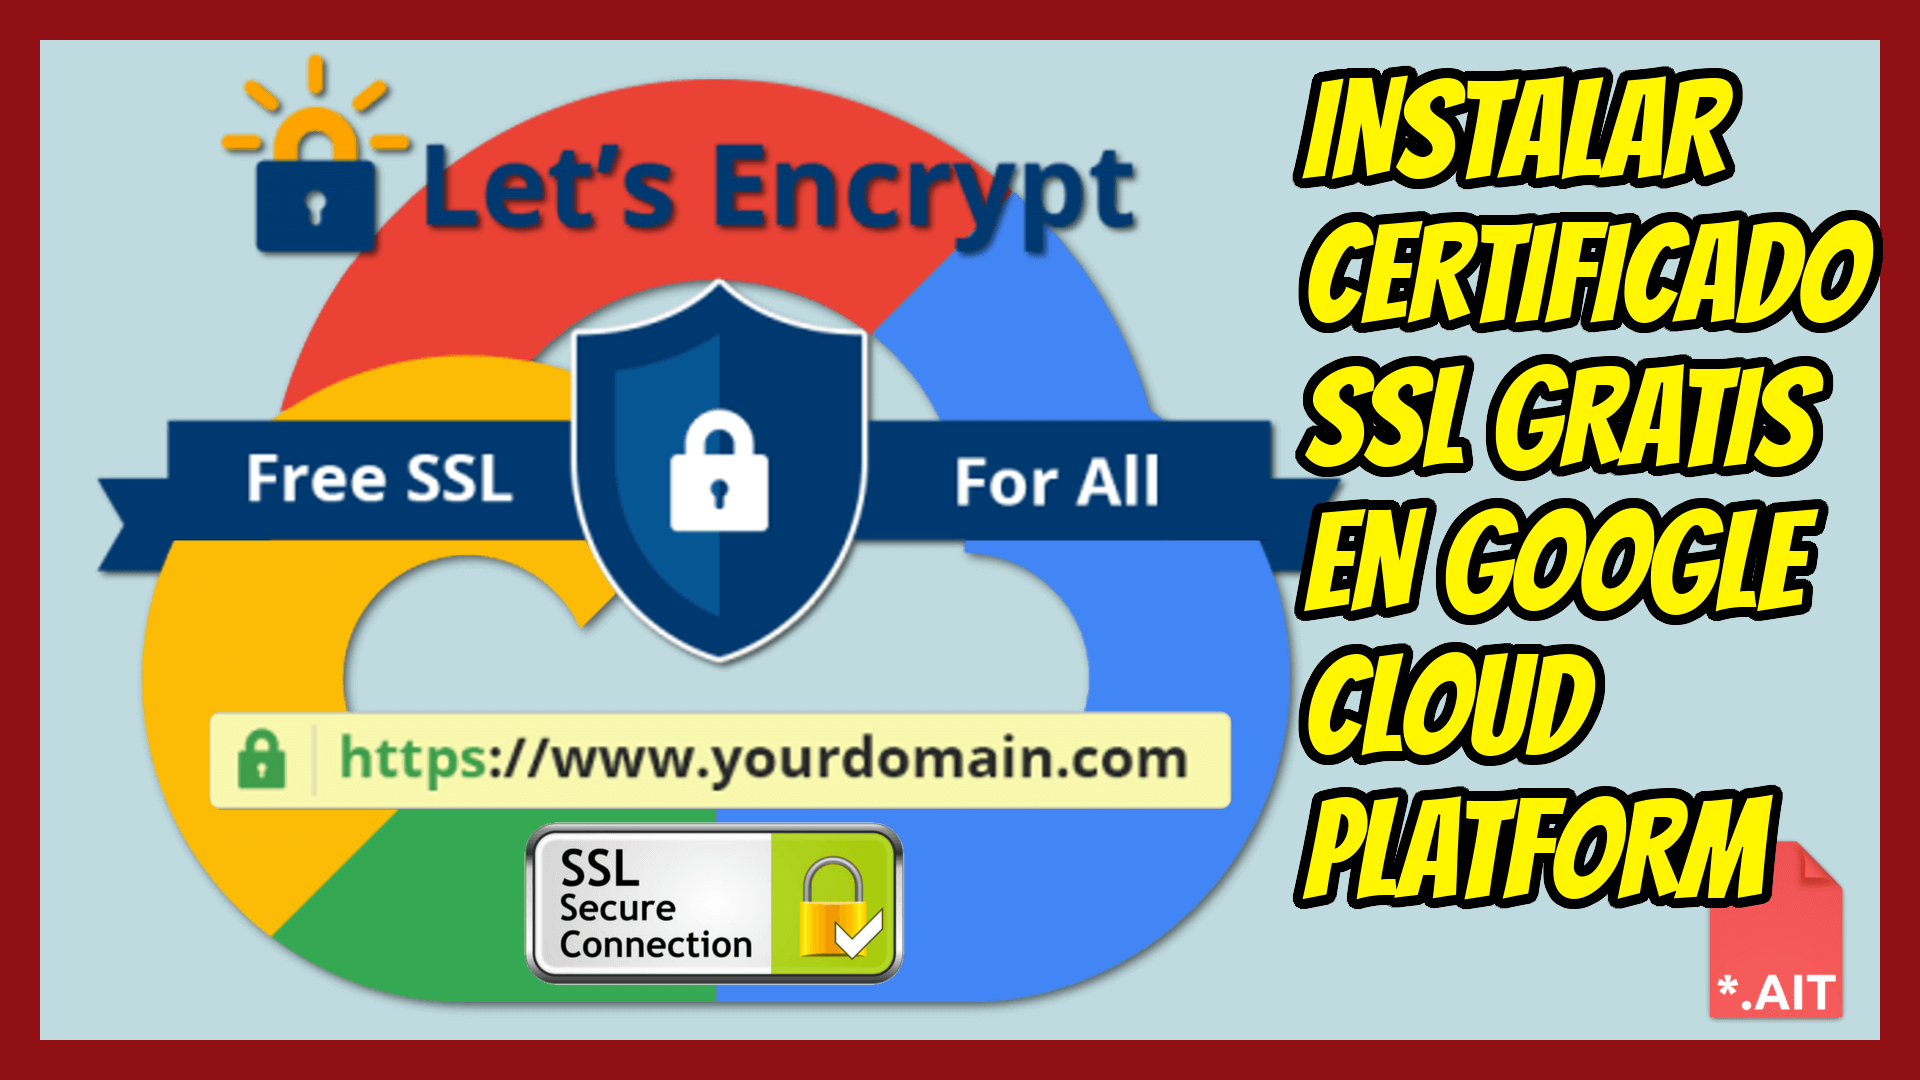 SSL GRATIS / FREE SSL